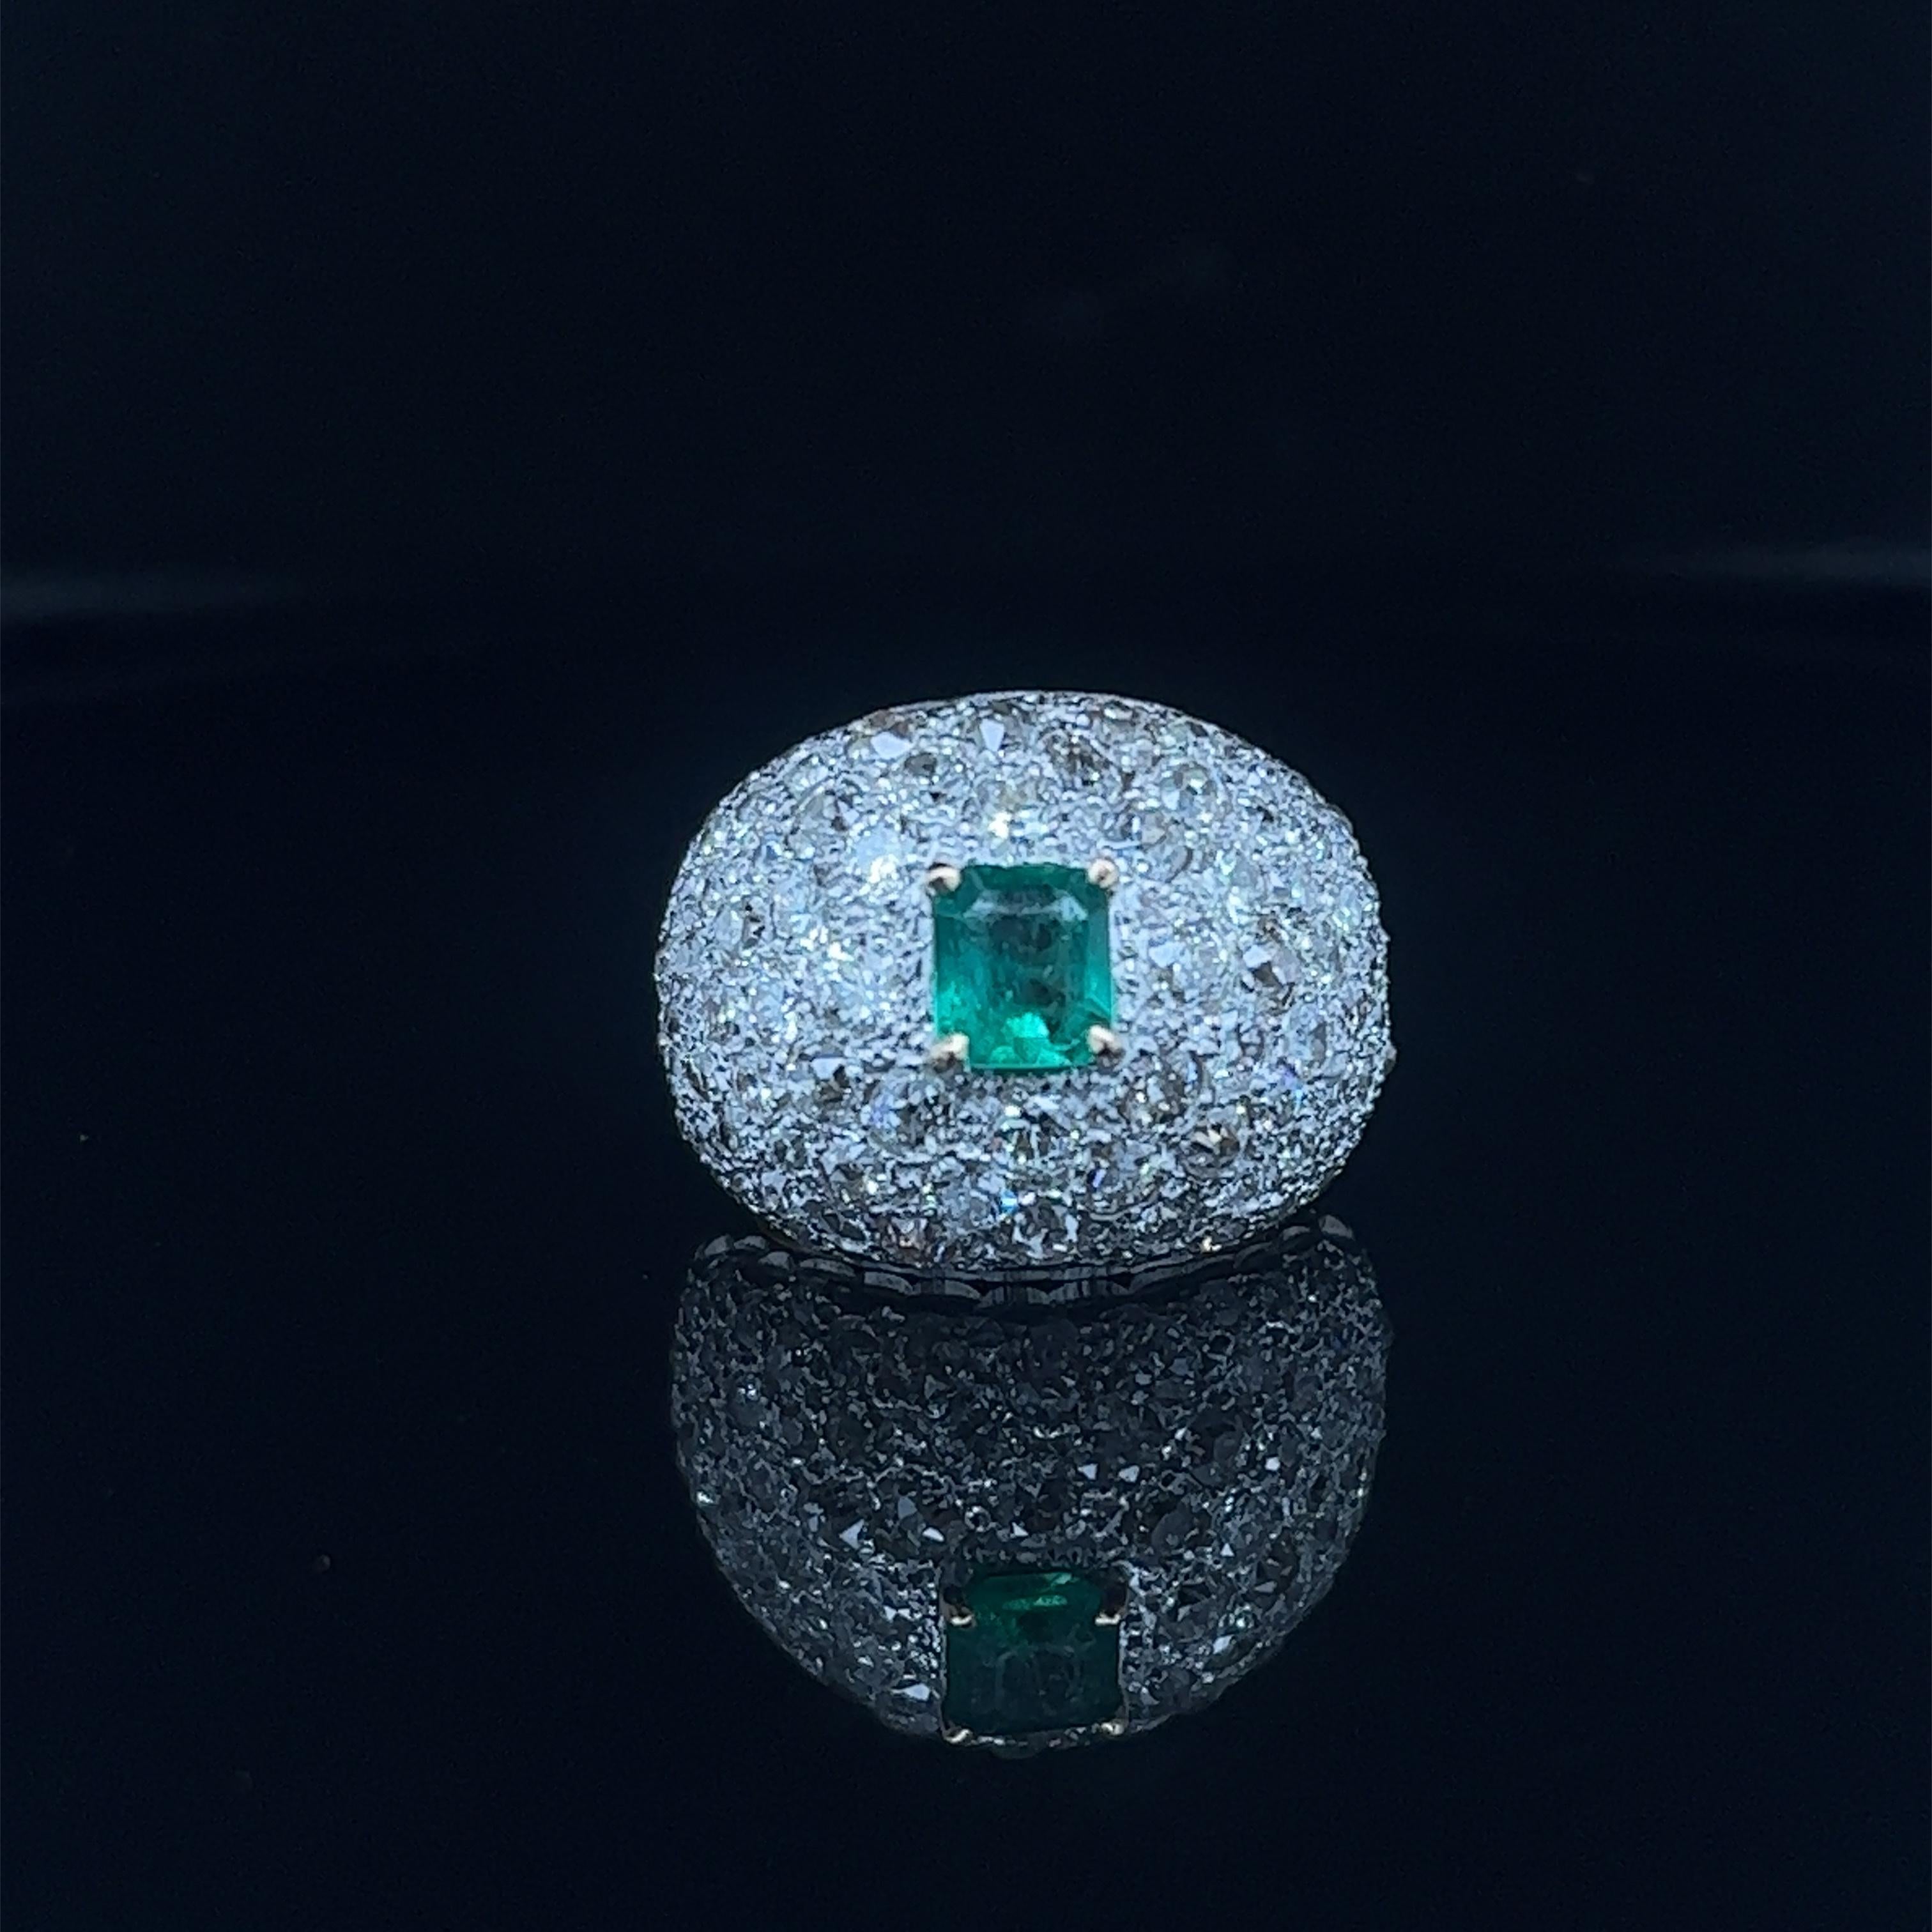     Un design phénoménal pour ce trésor de l'art déco. La bague est électrique car elle met en valeur de vieux diamants de taille européenne qui accentuent une émeraude colombienne d'un vert vibrant. L'anneau a un design en forme de dôme. Il mesure